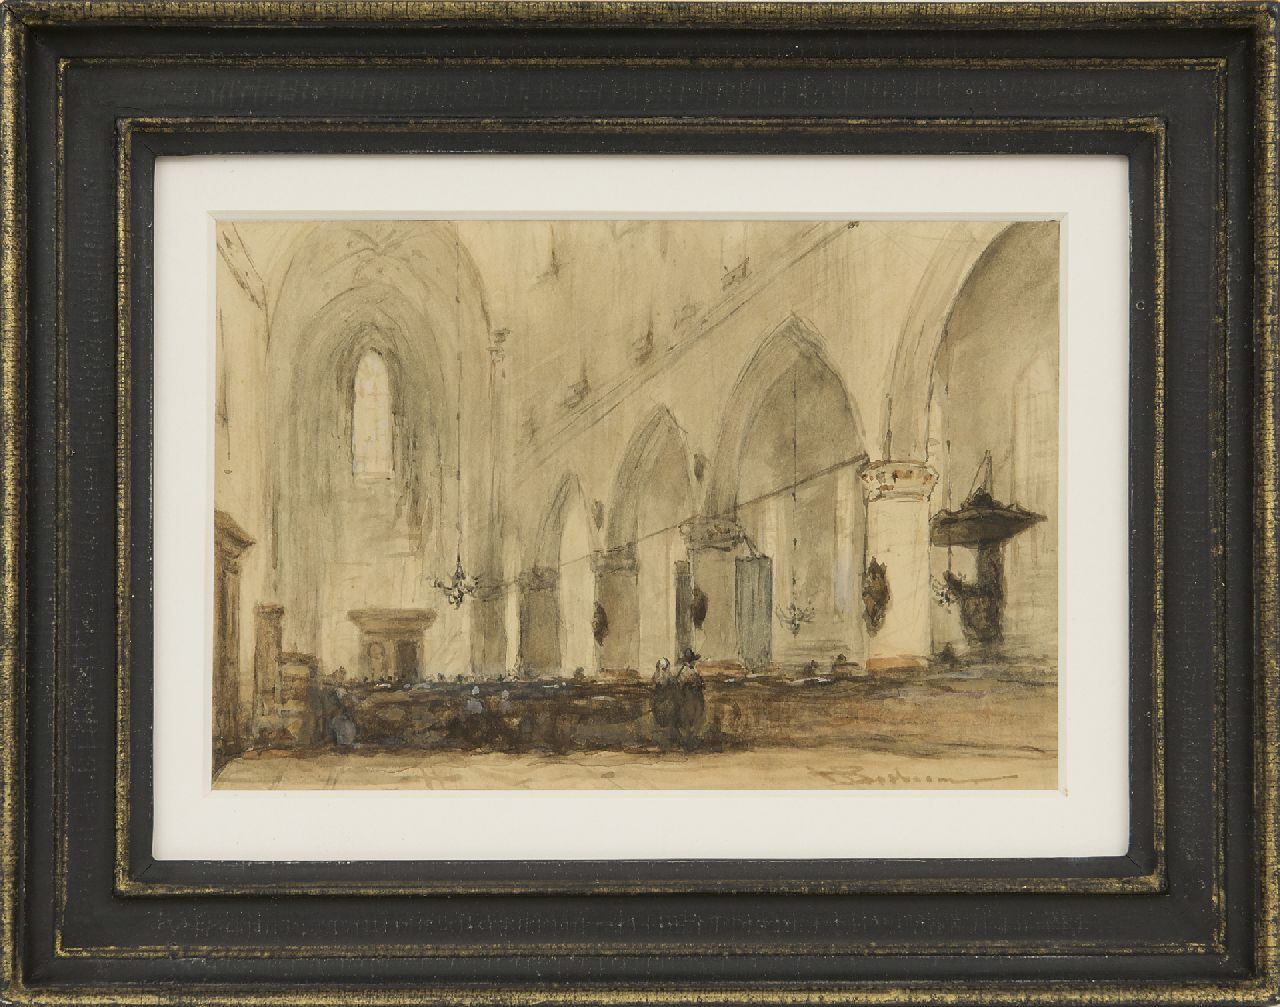 Bosboom J.  | Johannes Bosboom, Kircheninnenraum, watercolour on paper 13.0 x 19.2 cm, signed l.r.